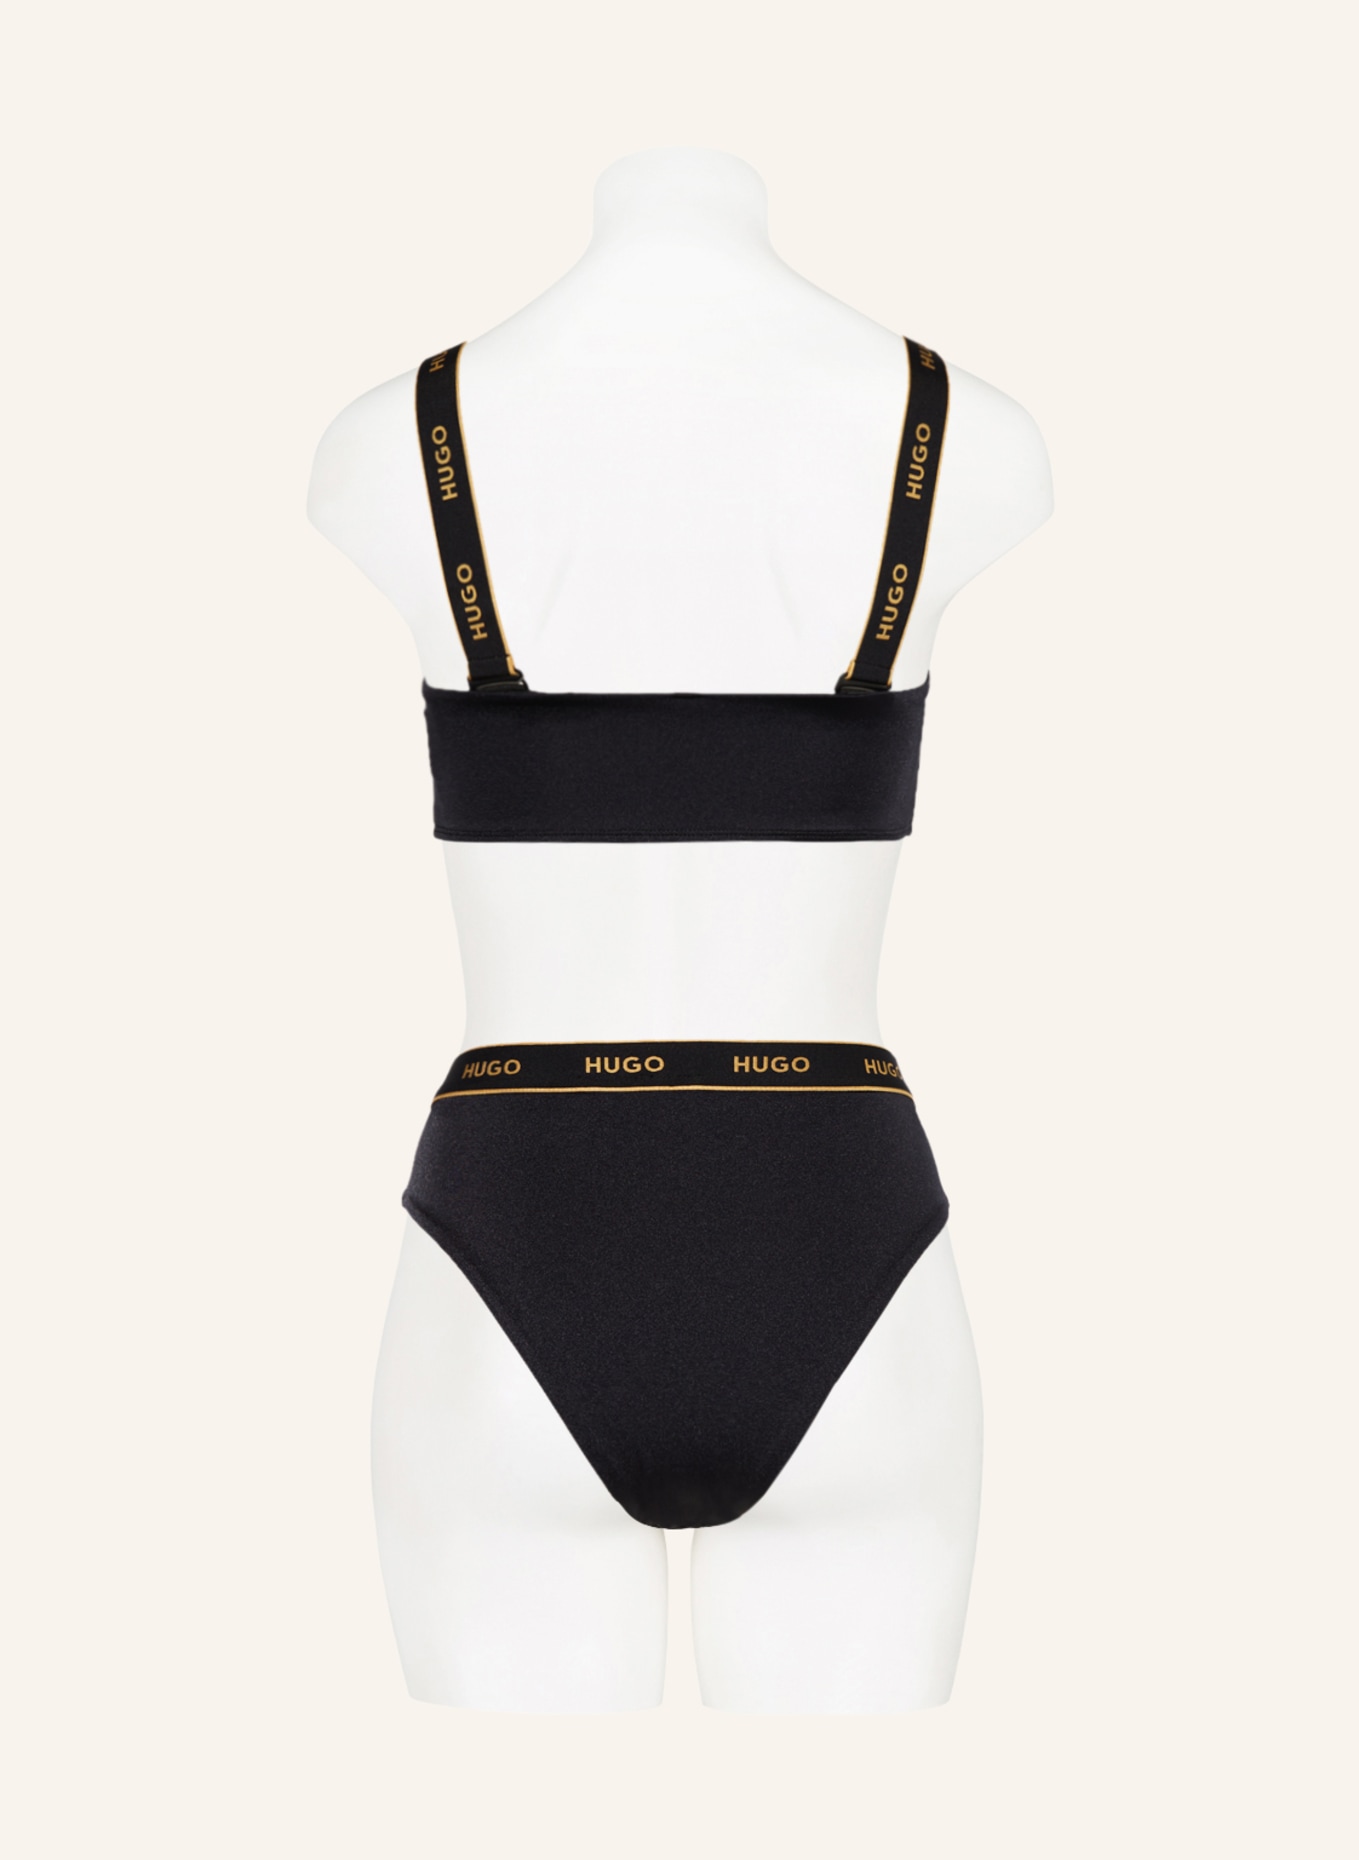 HUGO Bralette bikini top SPARKLING, Color: BLACK (Image 3)